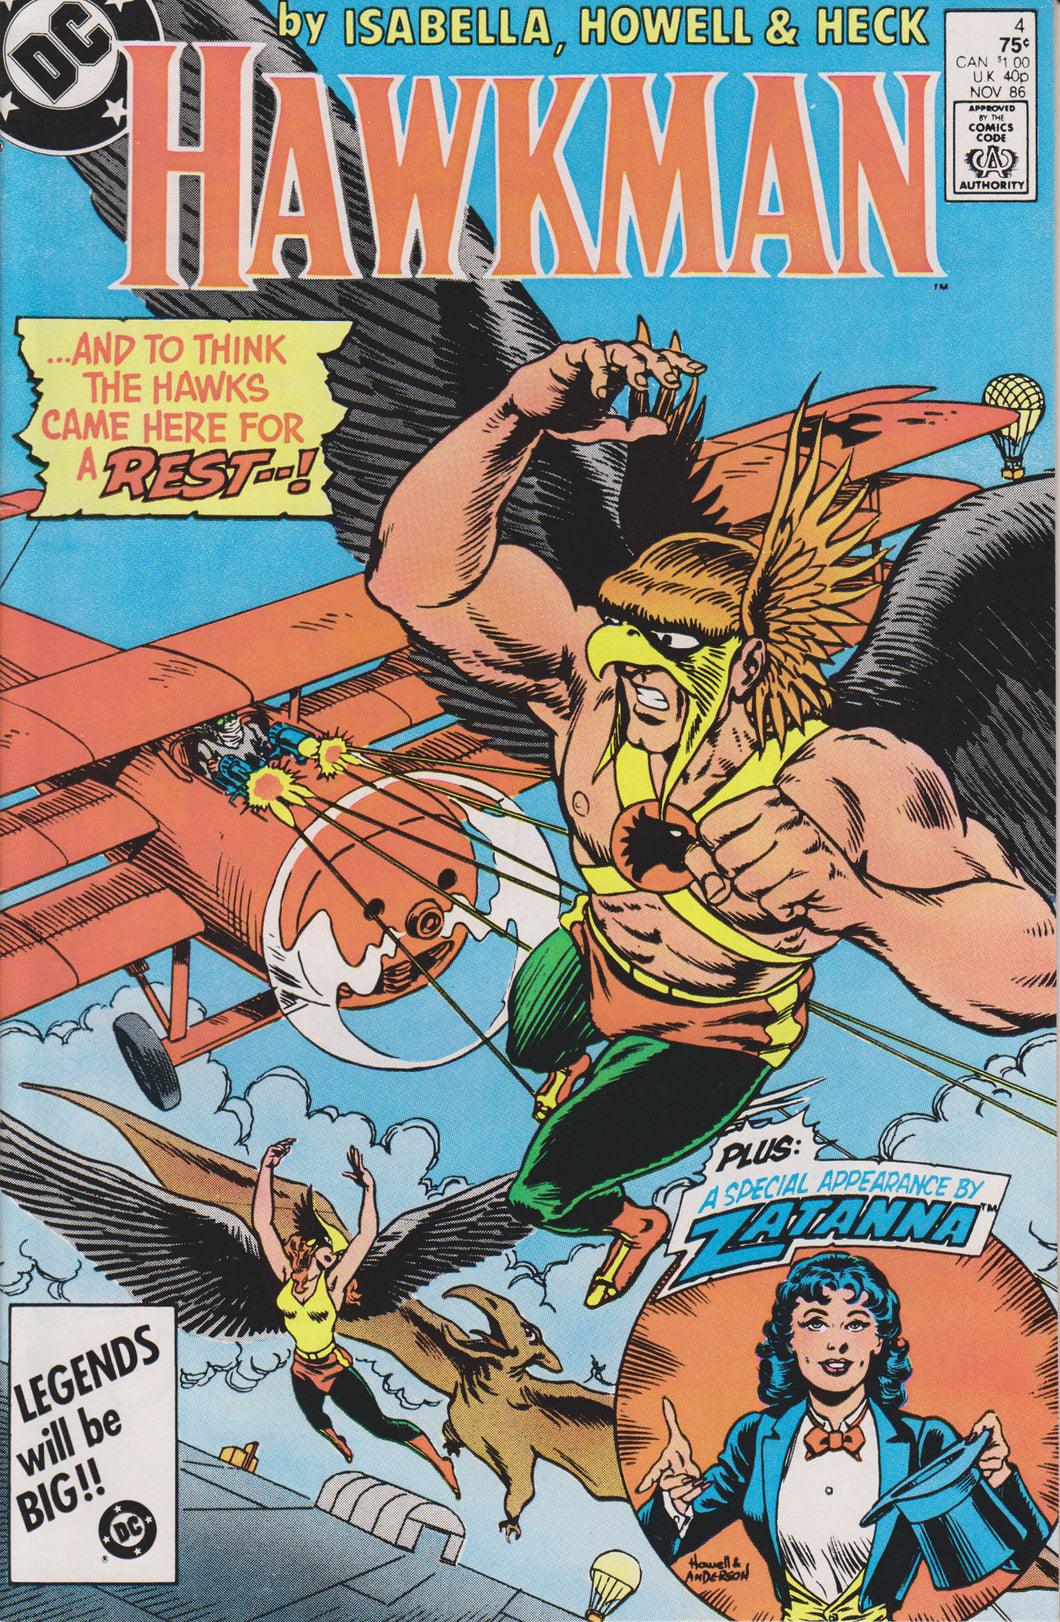 HAWKMAN #4 (1986) COMIC BOOK ~ DC COMICS